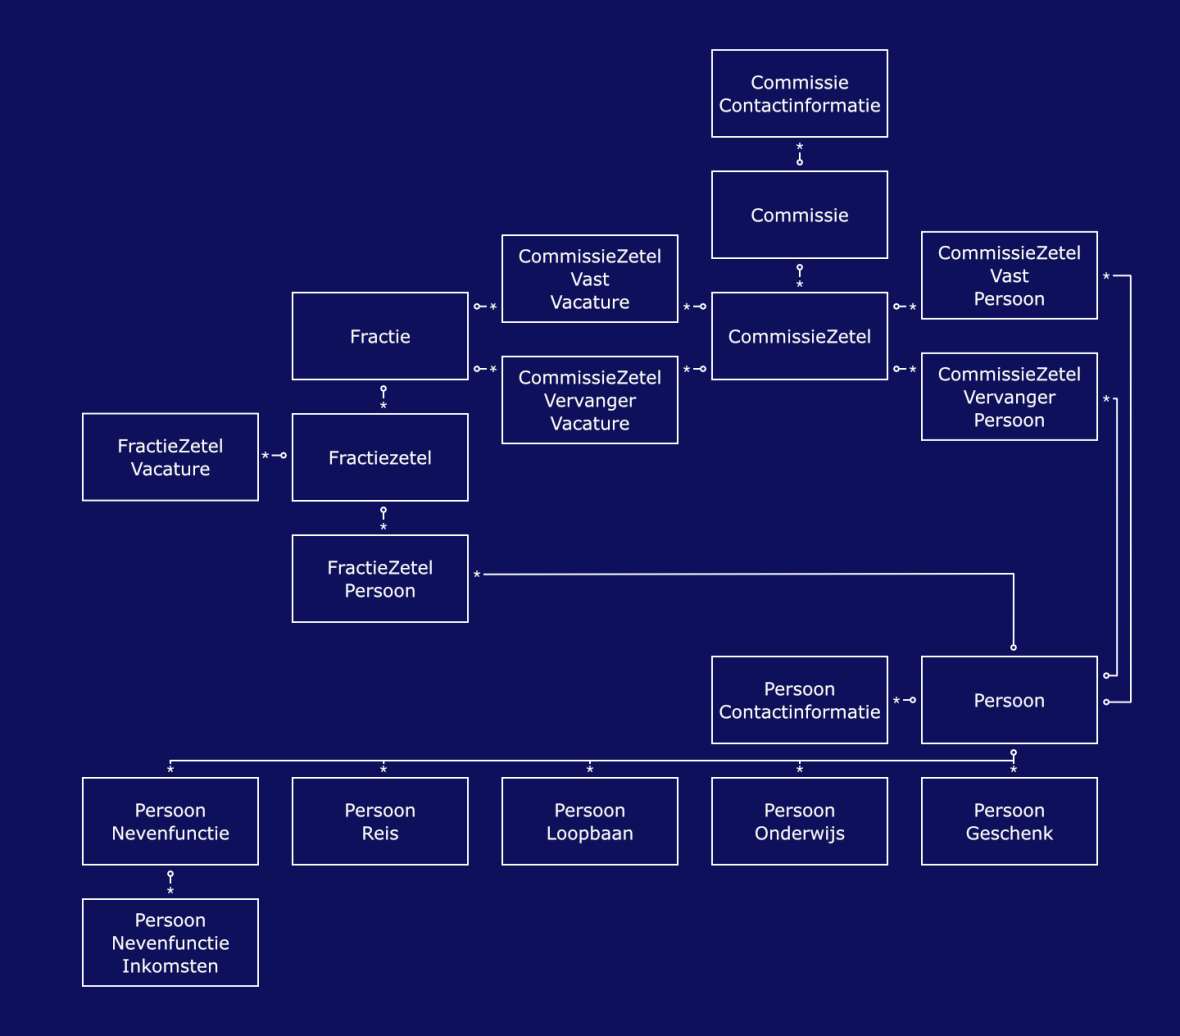 Informatiemodel van het Gegevensmagazijn met de verwijdering van de entiteitsoort FractieAanvullendGegeven die voorheen een relatie had met de entiteitsoort Fractie. 